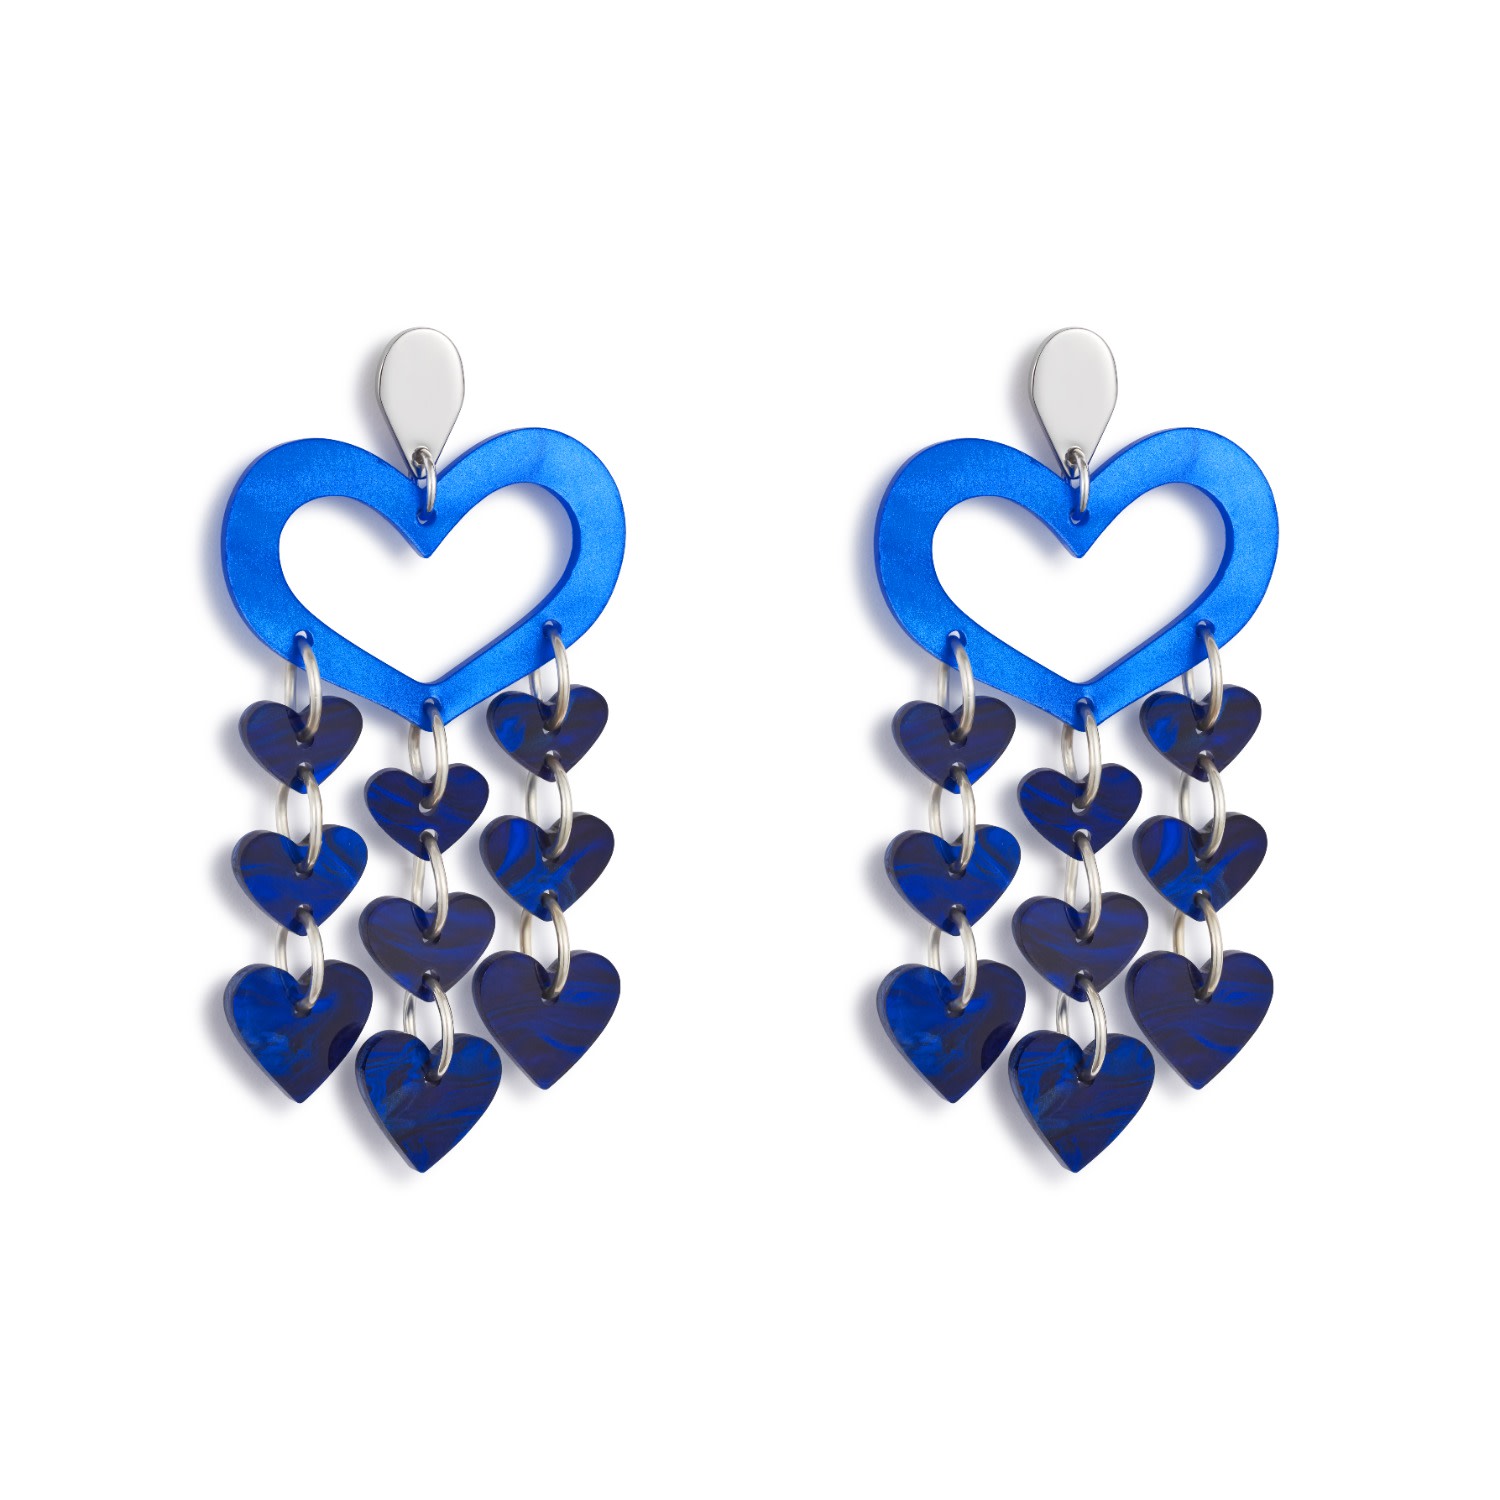 Toolally Women's Heart Chandeliers - Blue